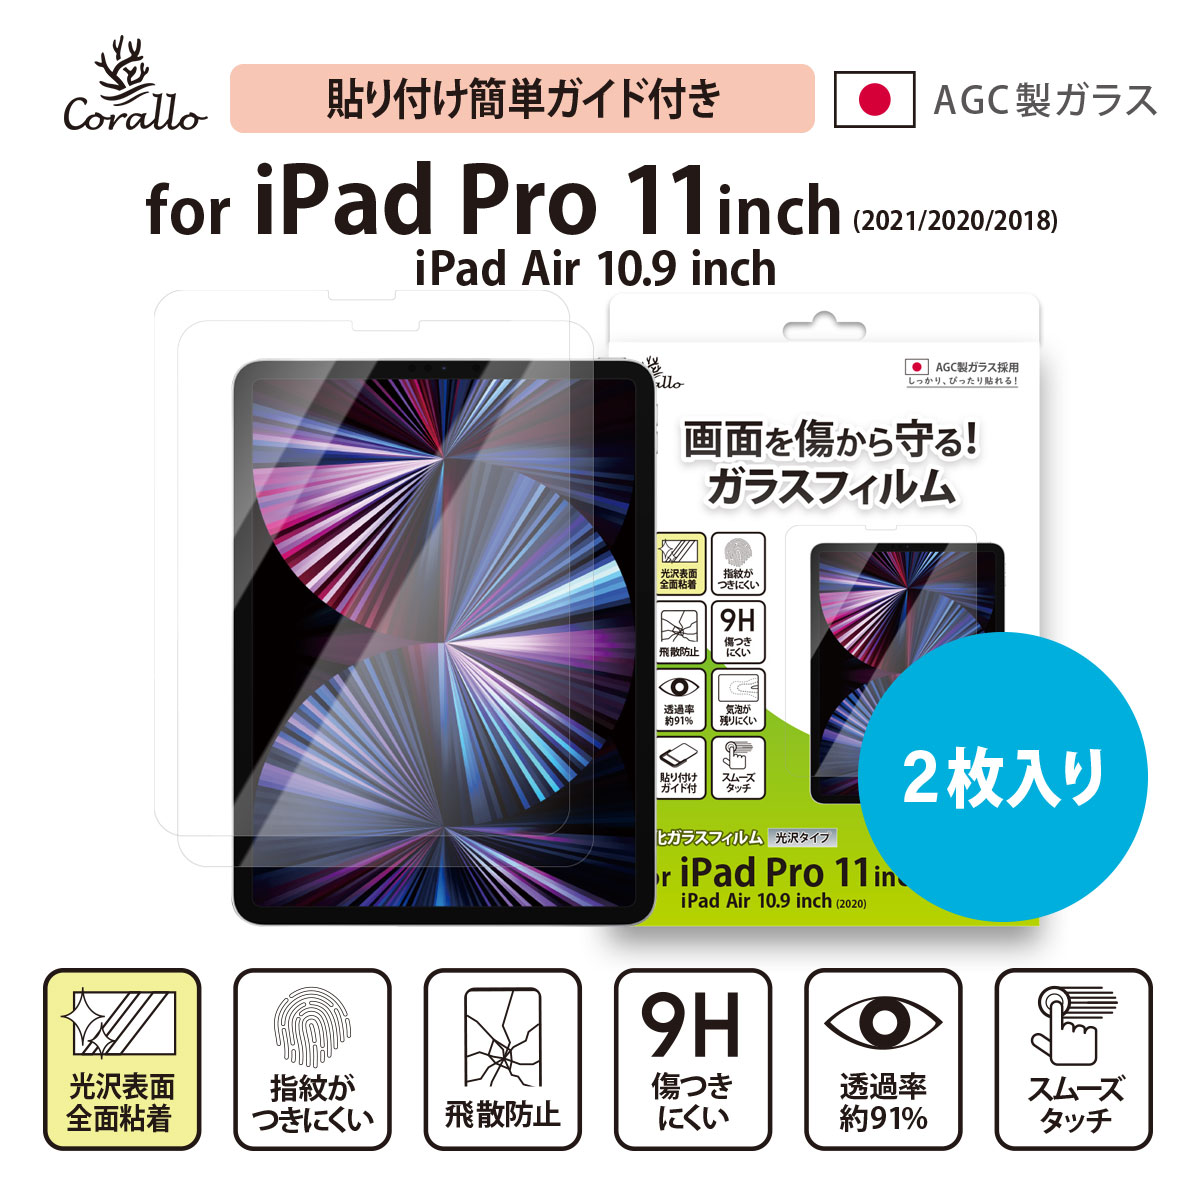 iPad Air 第5世代 Air4 / Pro 11 2022 2021 ガラスフィルム 2枚 セット 9H ガラス 透明 ガラスフィルム 日本製 AGC 硝子 指紋防止 液晶 保護フィルム Apple iPadPro11 第4世代 第3世代 iPadAir4 Air5 アイパッドプロ 11インチ アイパッドエアー 対応 Corallo NU GLASS